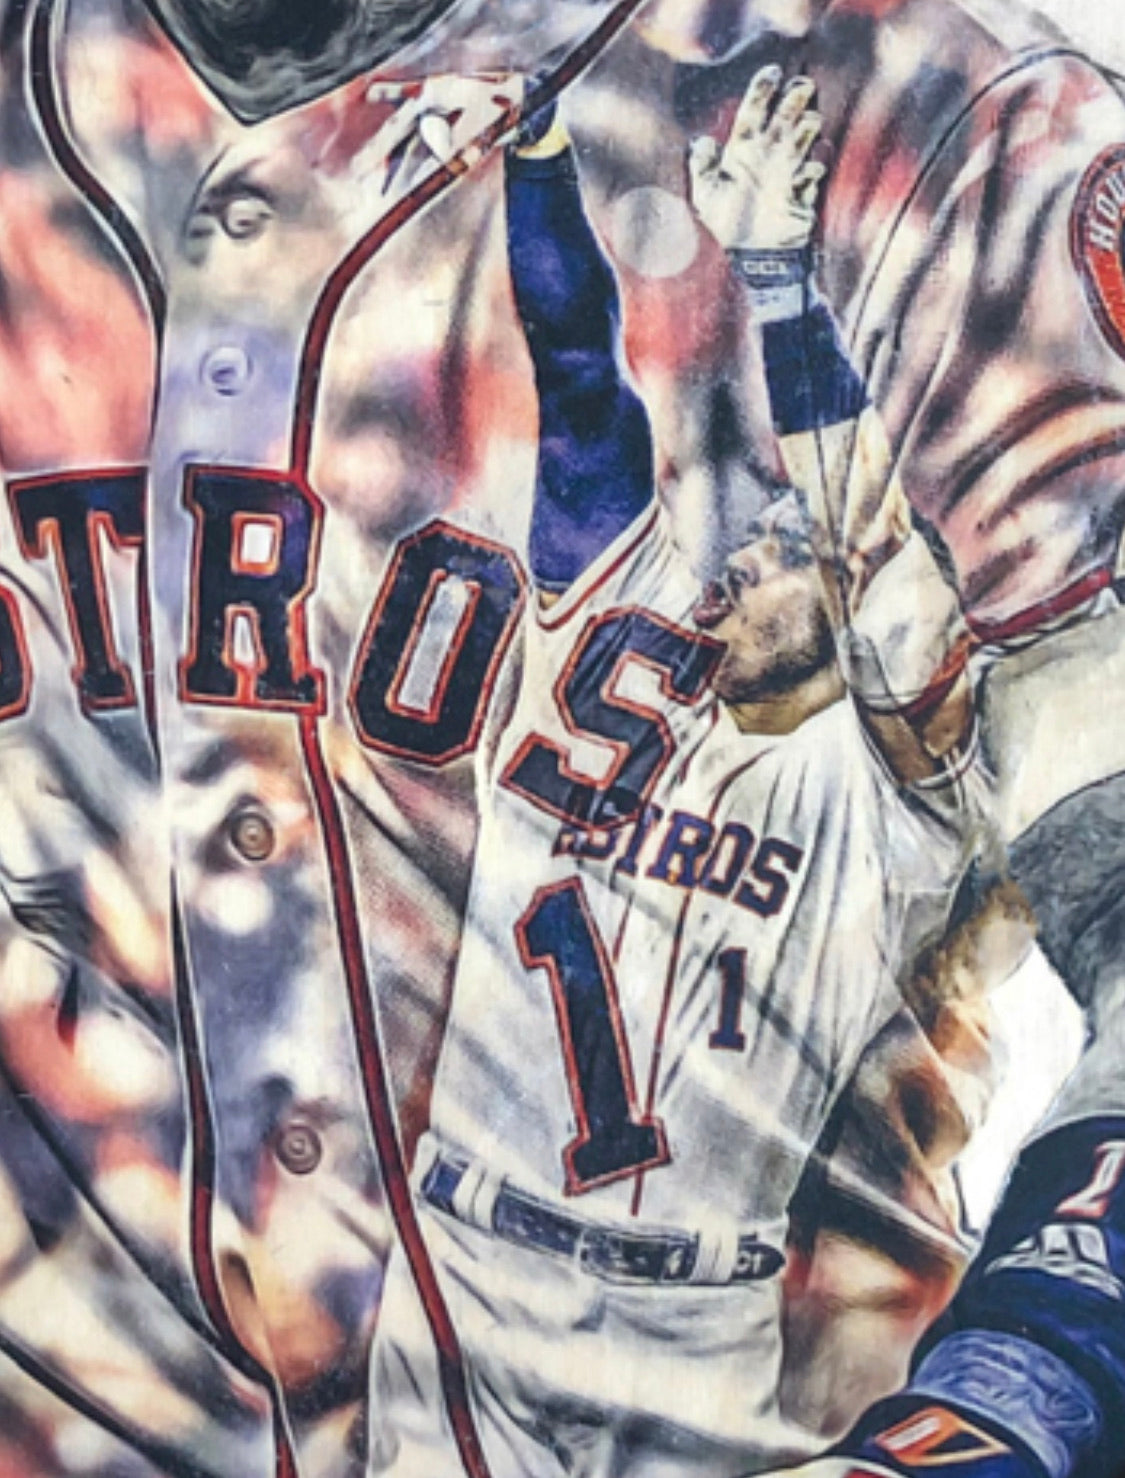 “Correa Walk Off” (Carlos Correa) Houston Astros - 1/1 Original on Wood